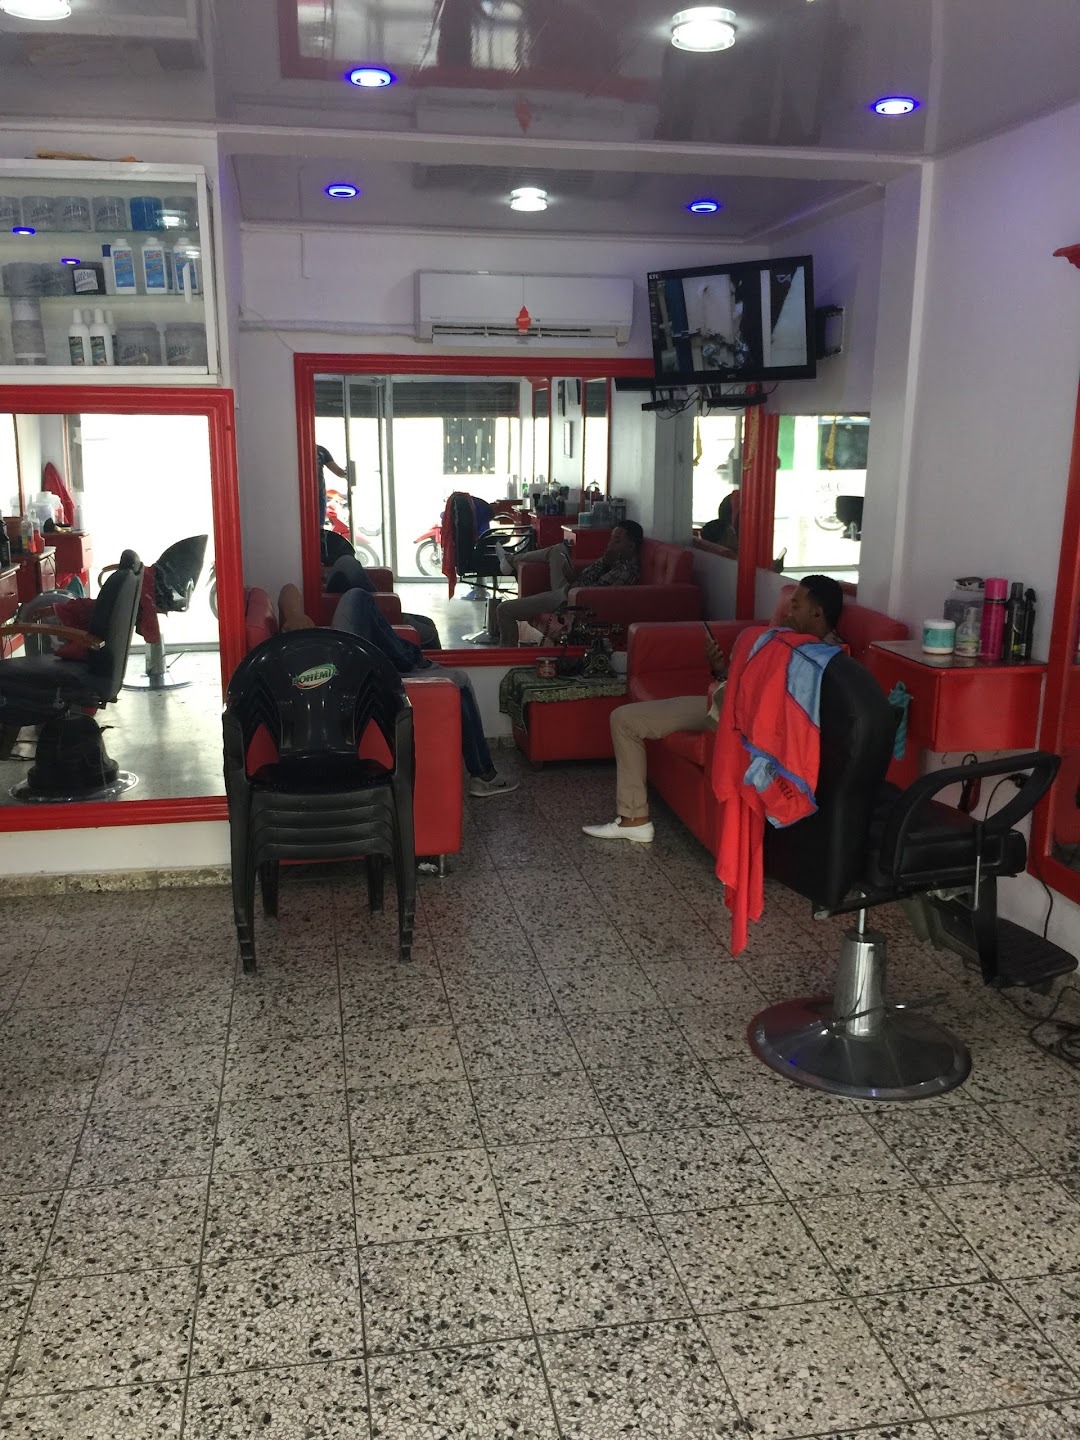 DInfant rosario barber shop academy